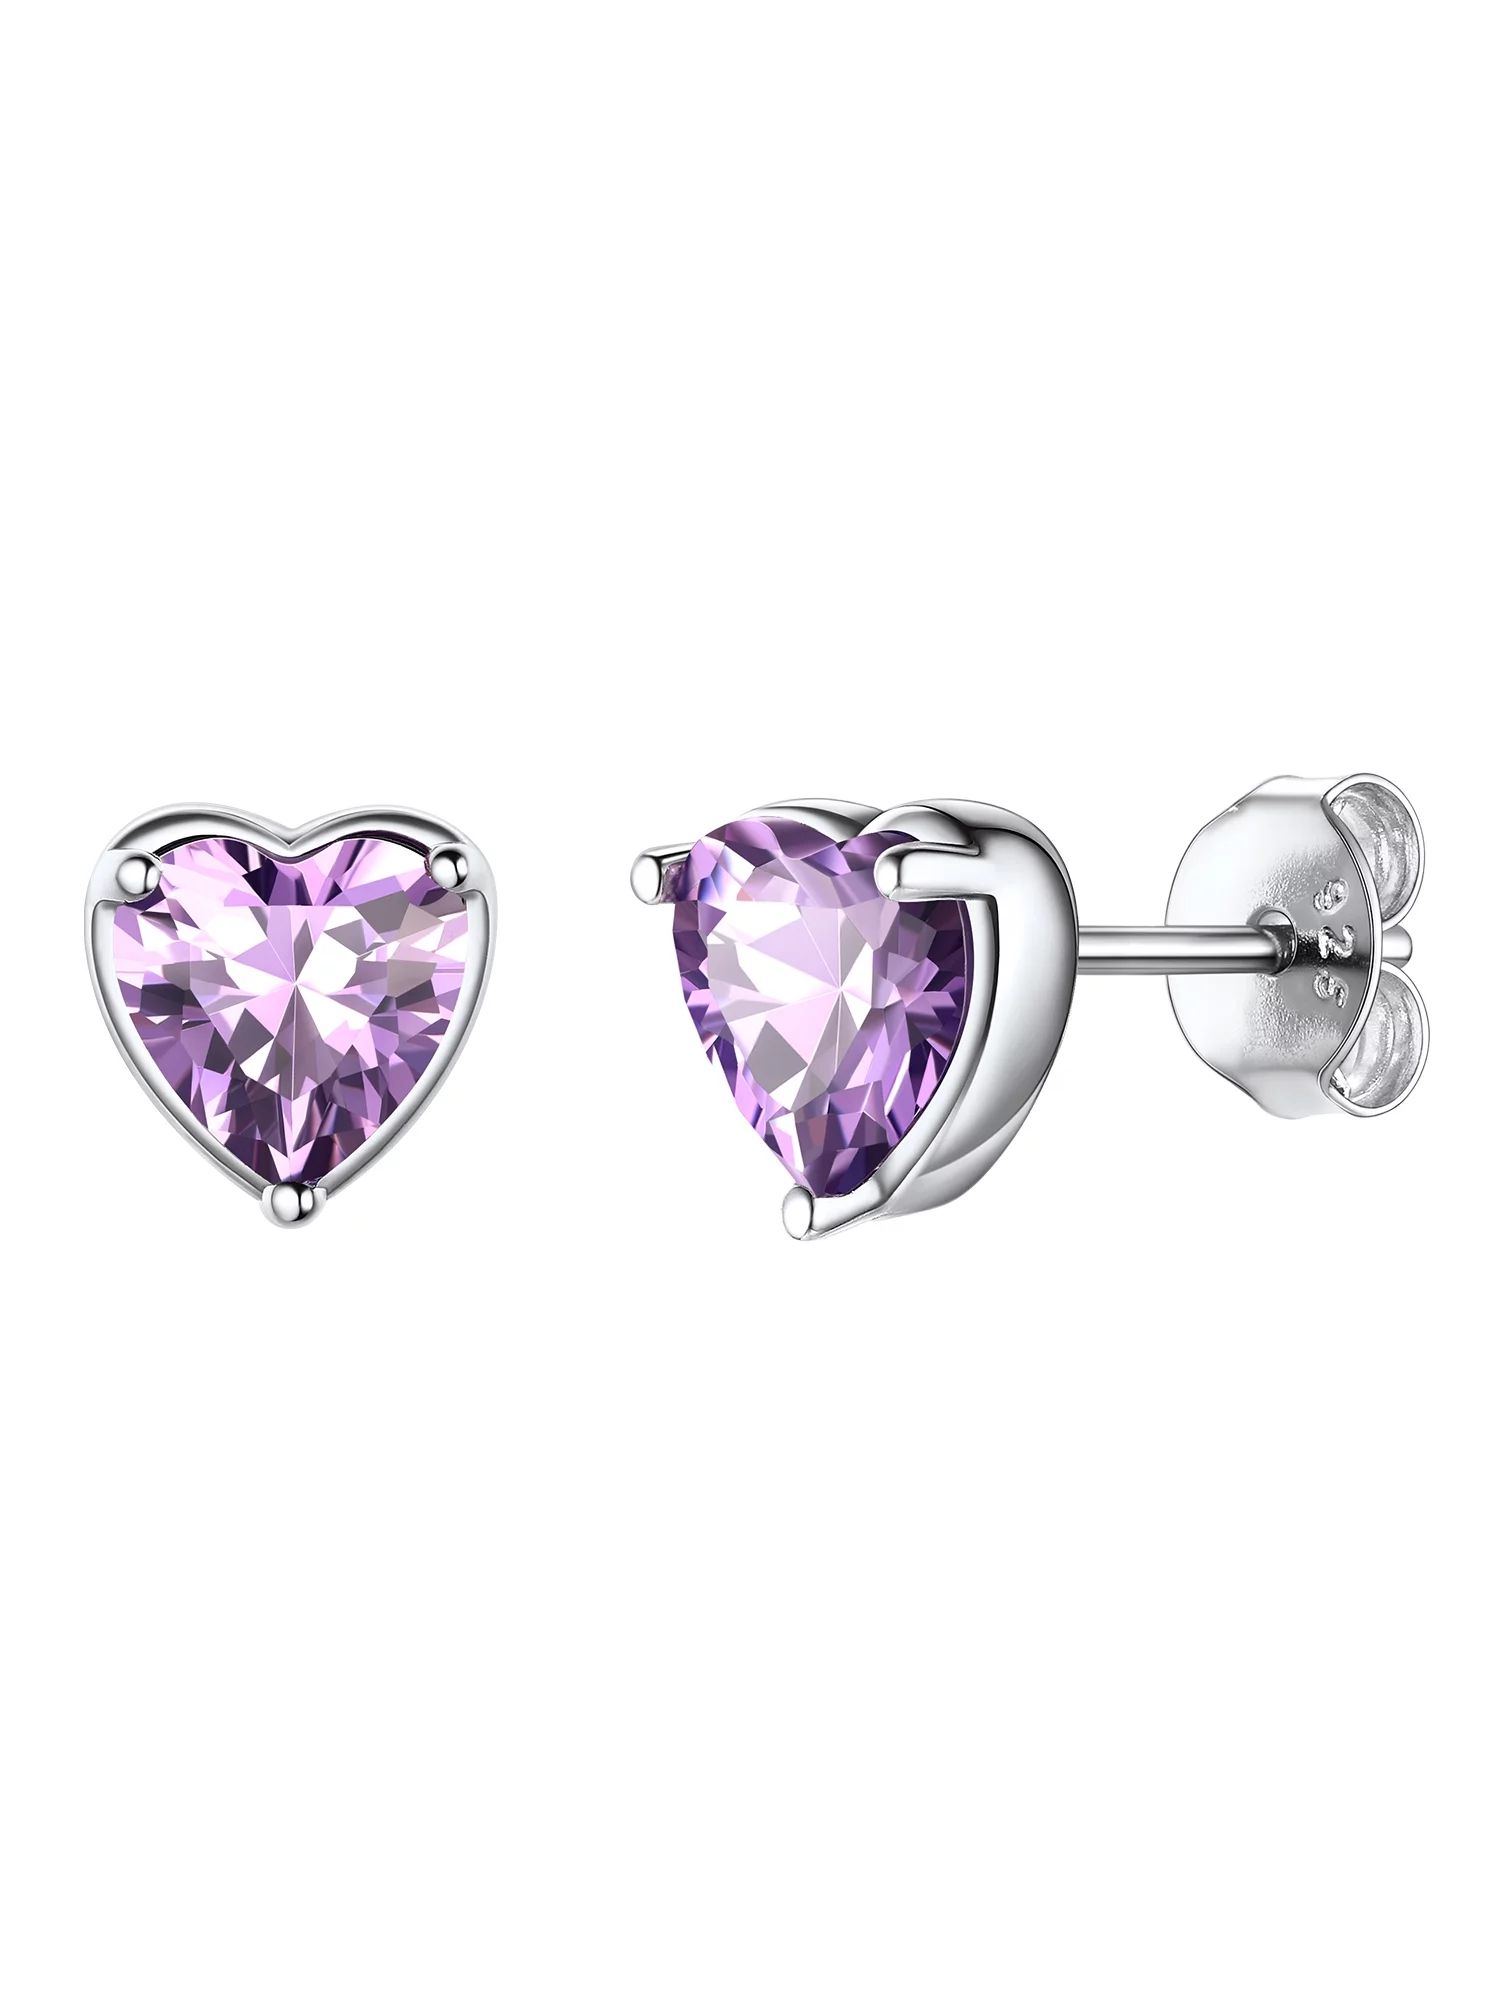 ChicSilver Heart Stud Earrings June Birthstone Jewelry for Women, Hypoallergenic Sterling Silver ... | Walmart (US)